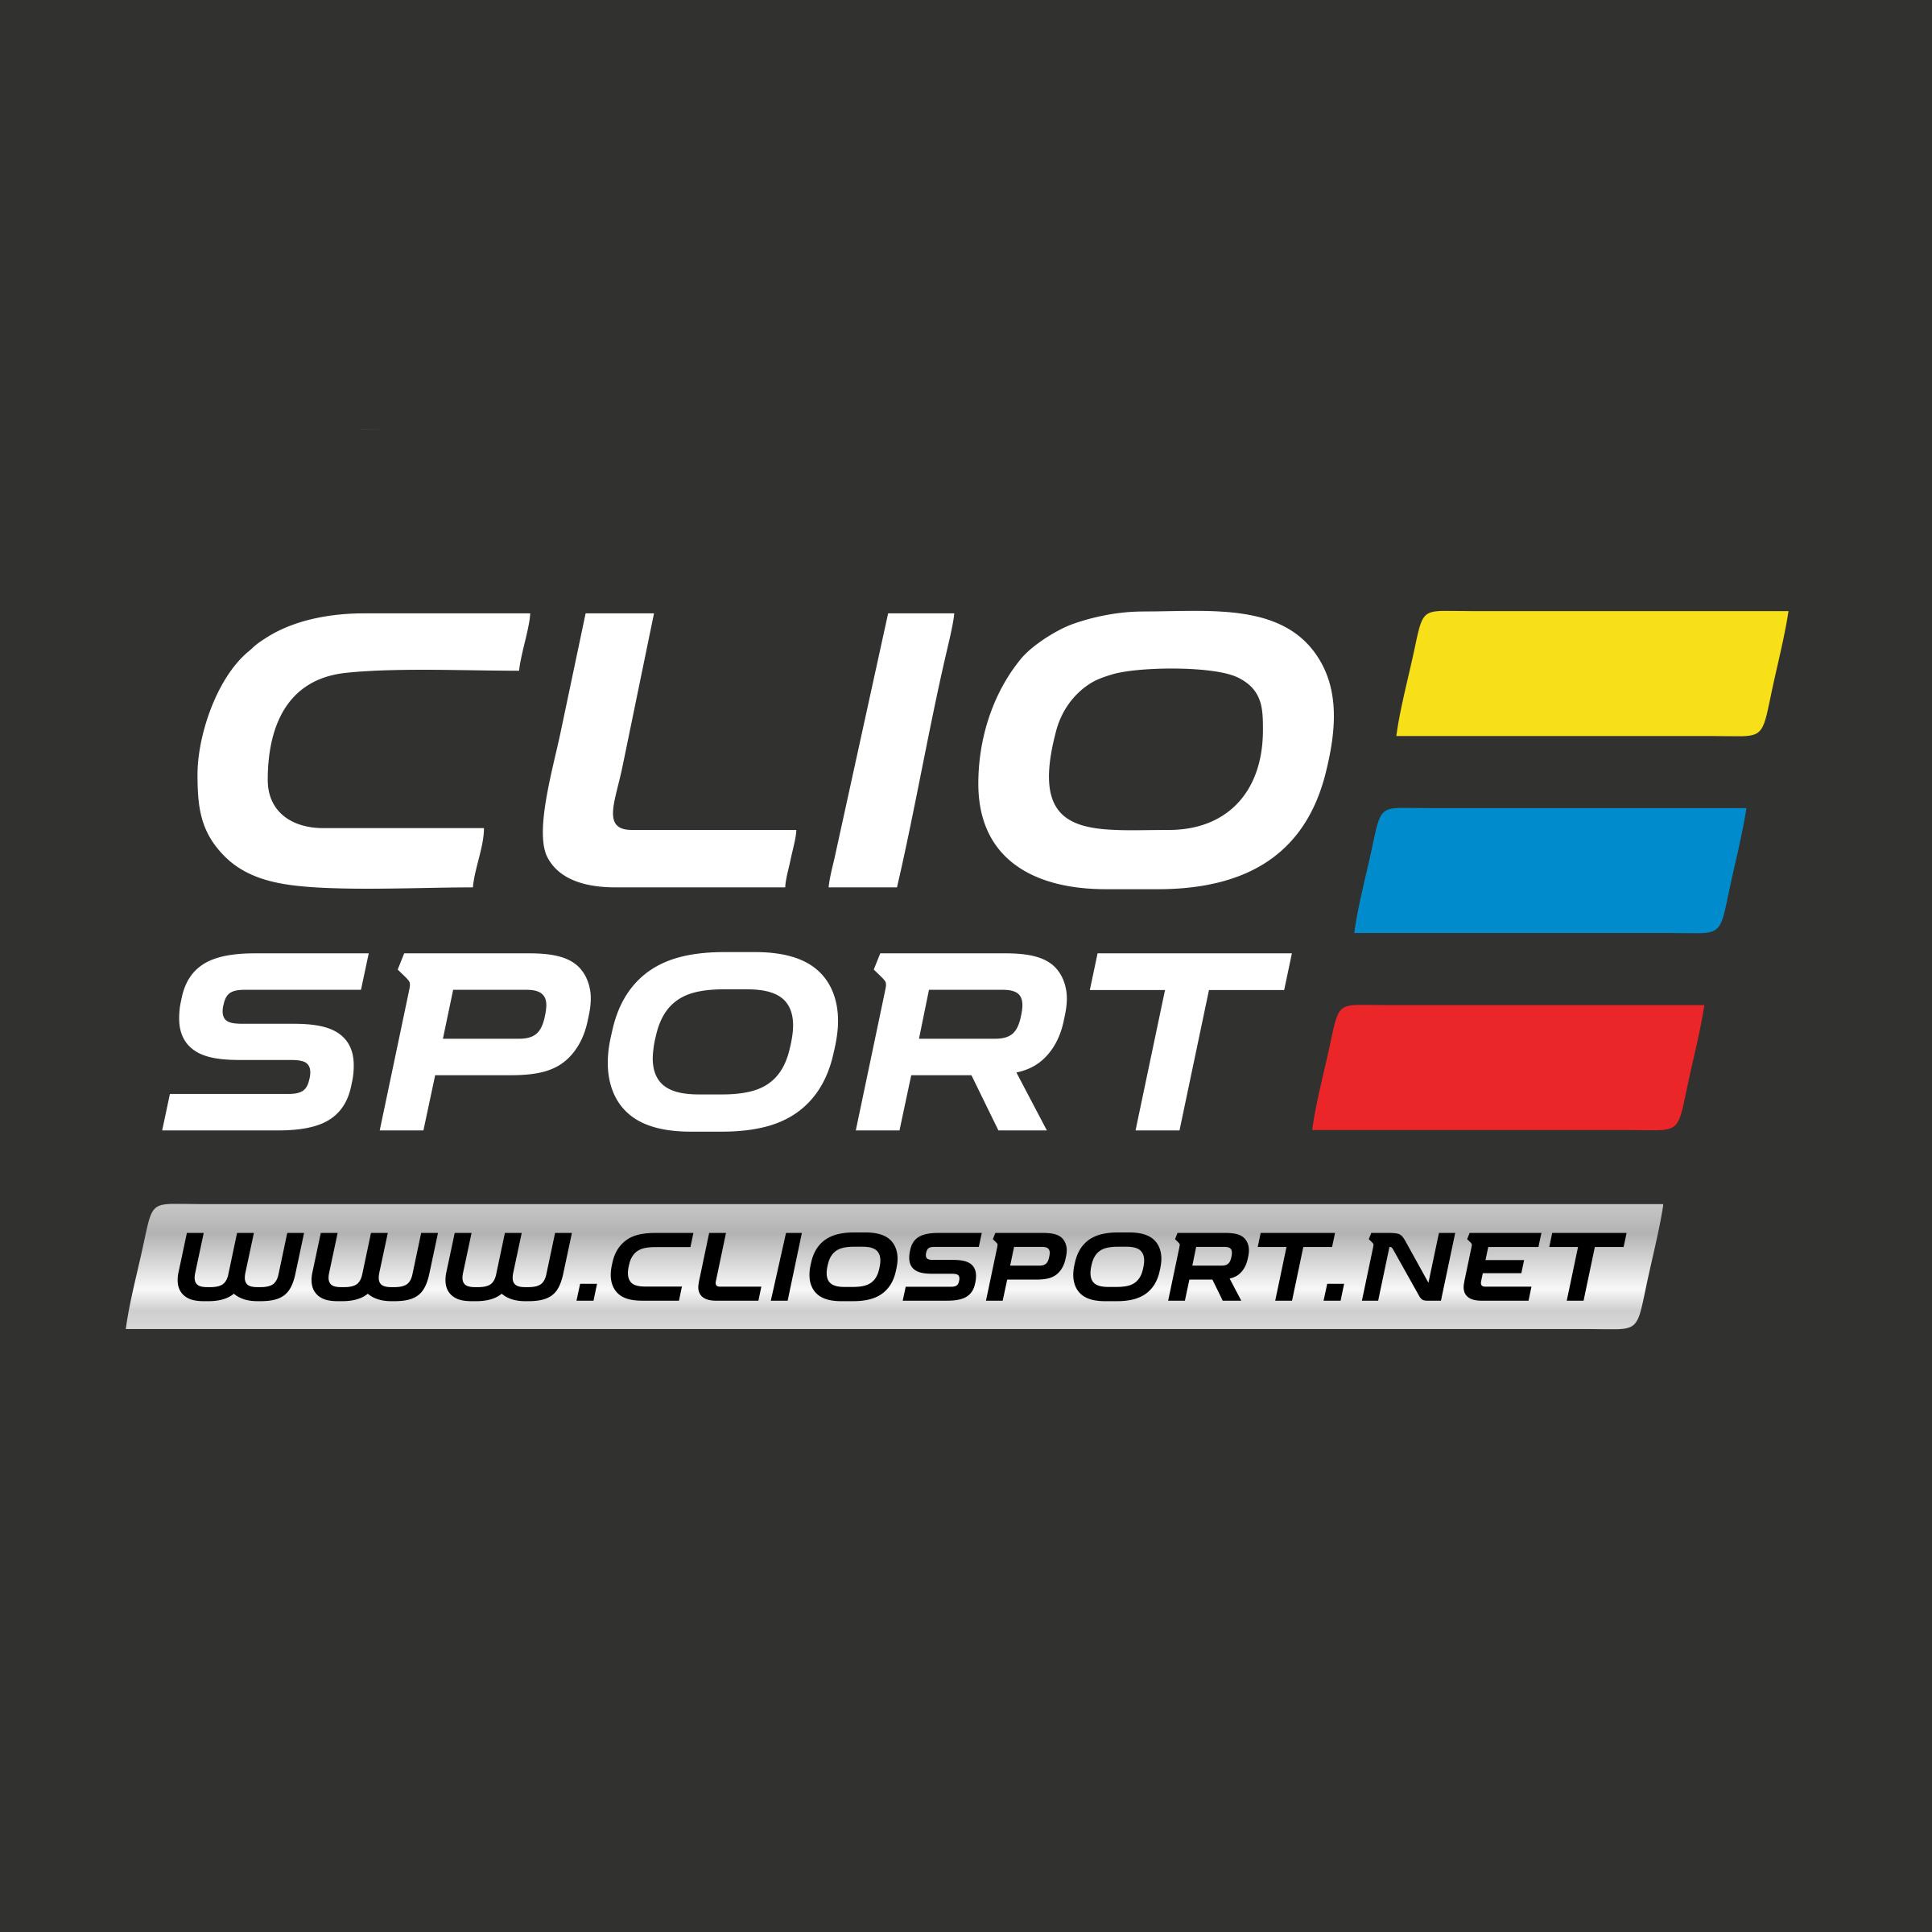 CLIO CUP À LACTION ! - AUTOMOBILISTA - YouTube